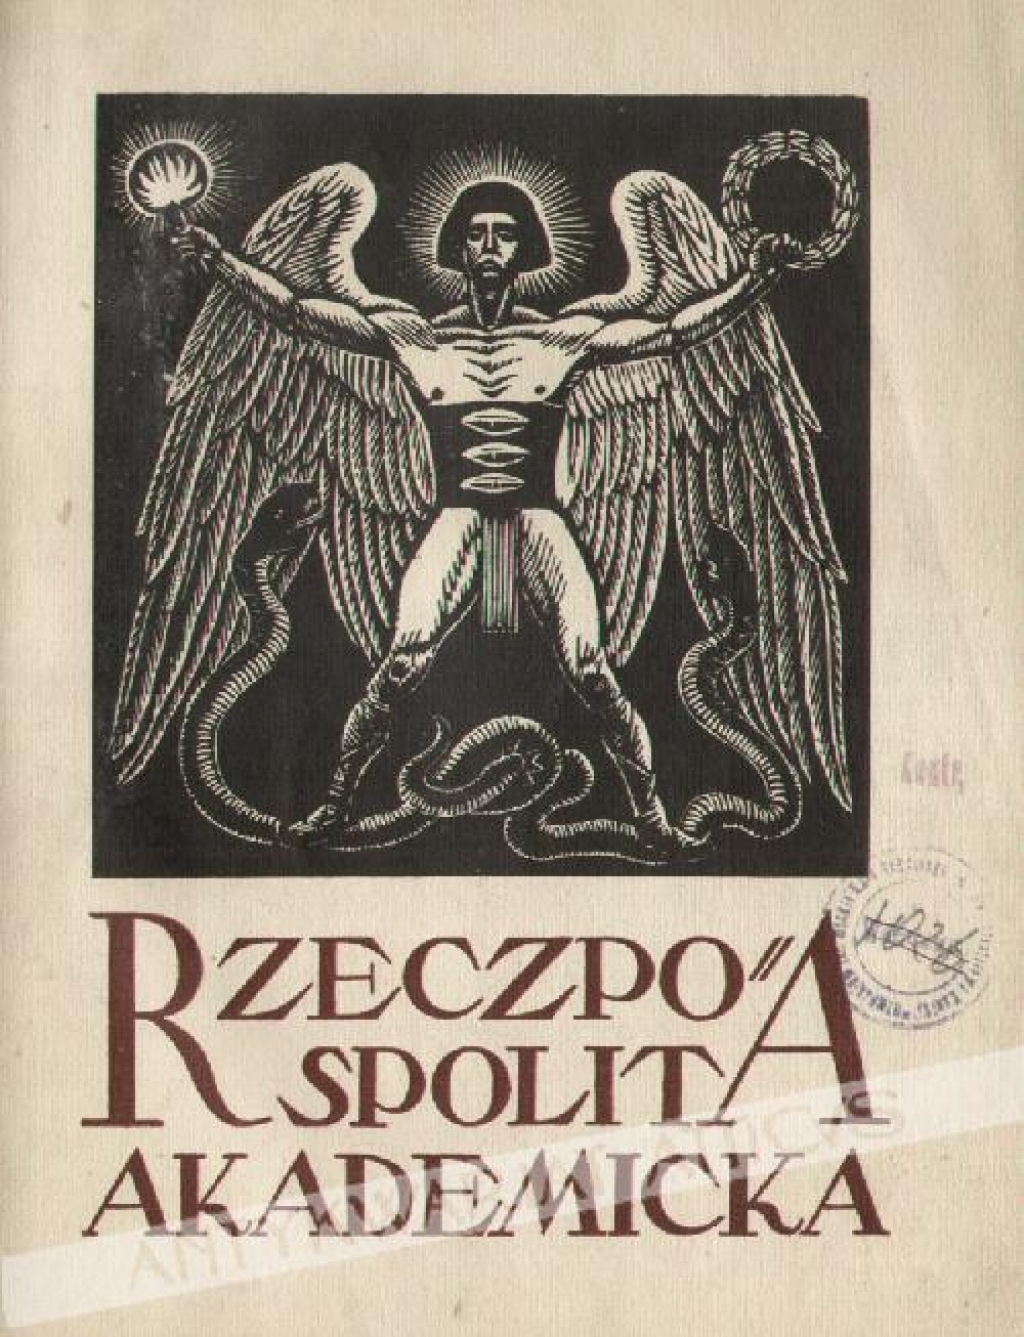 Rzeczpospolita Akademicka. Rok 1921/1922  [okładka W. Skoczylas]